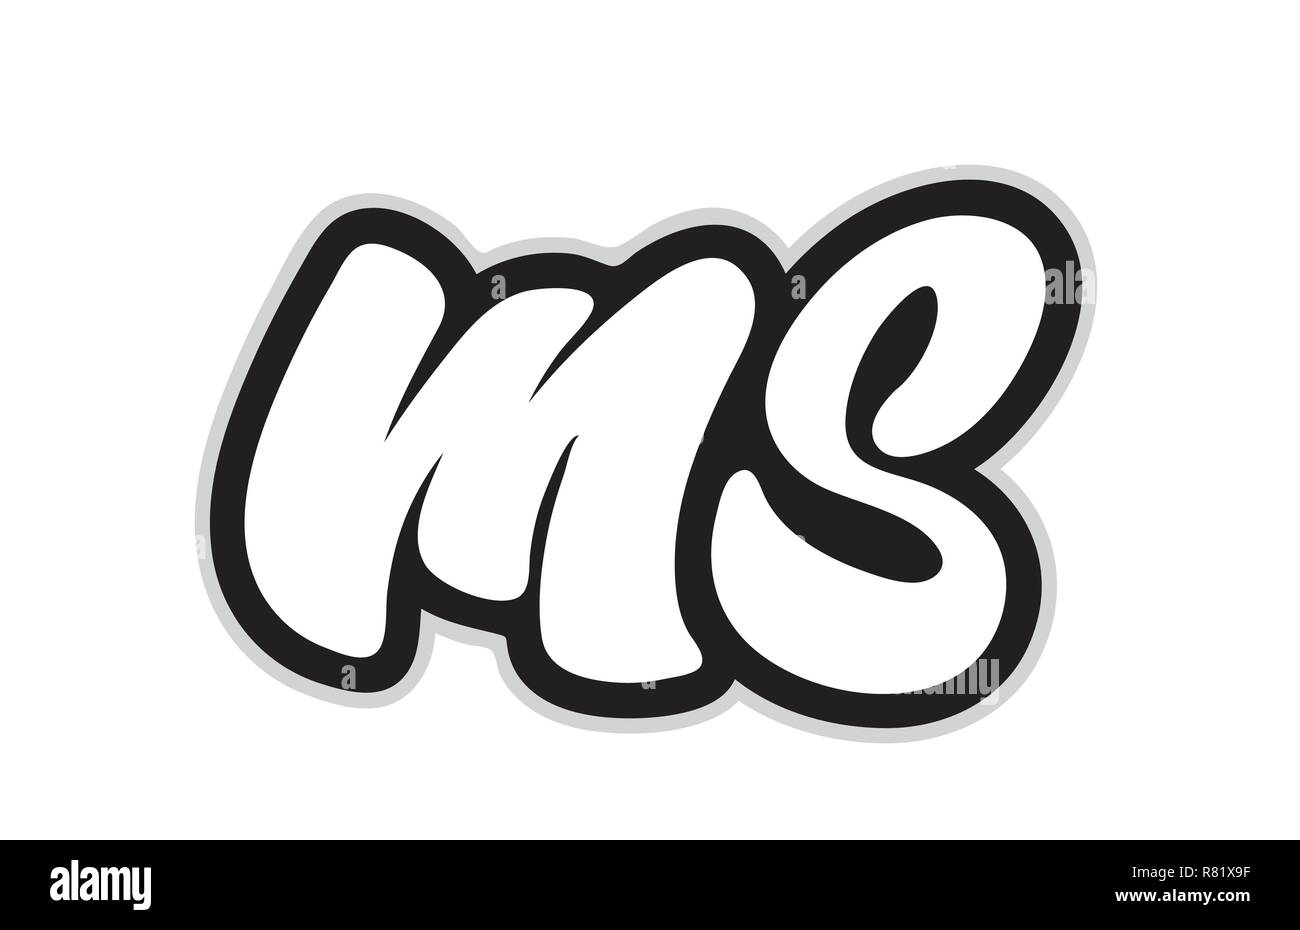 Ms logo Banque d'images noir et blanc - Page 2 - Alamy